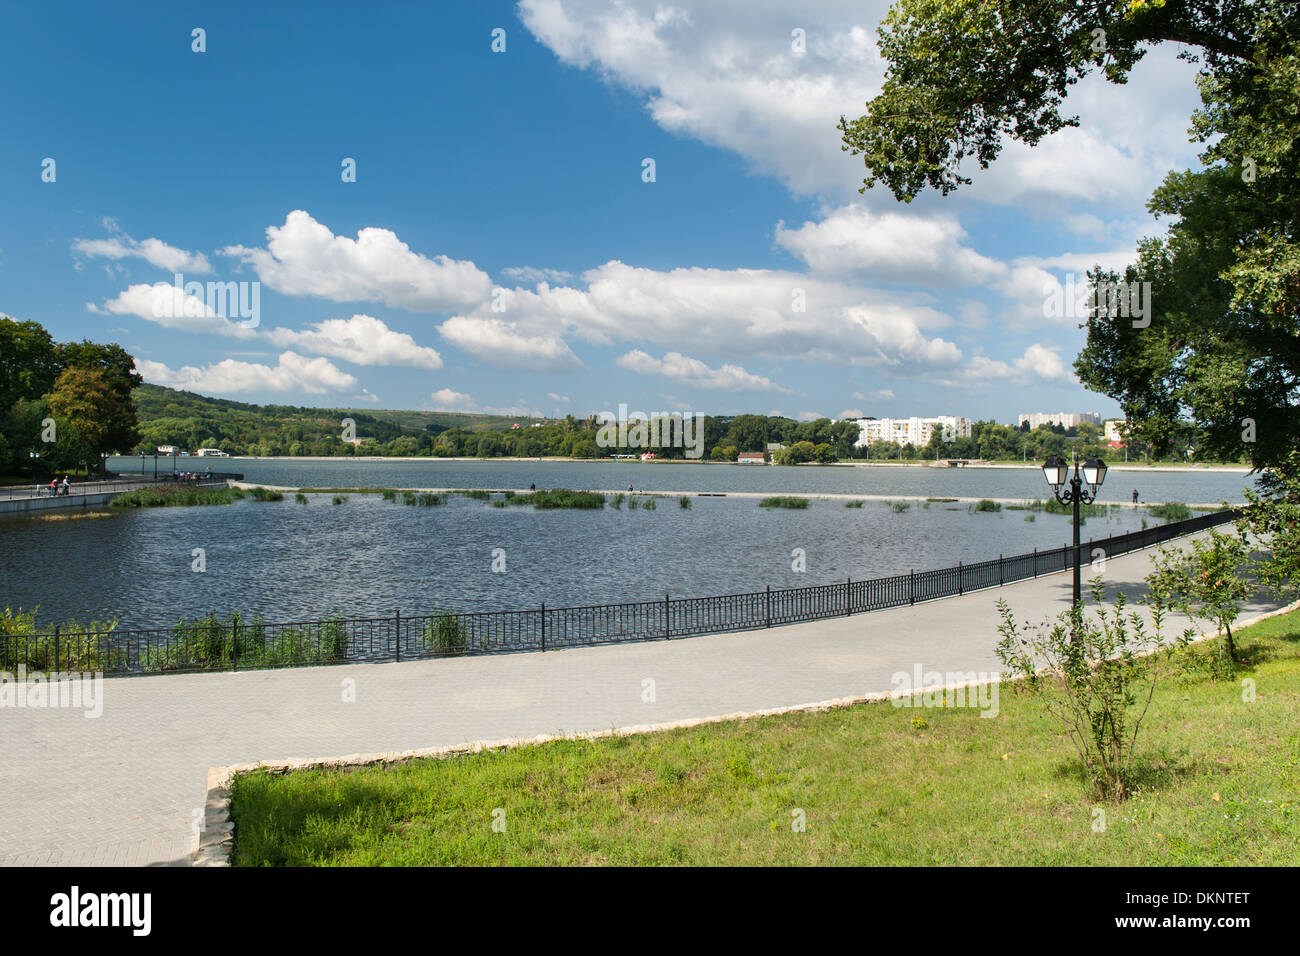 Parcul Valea Morilor (Valley Mills Park) à Chisinau, la capitale de la Moldavie dans l'Europe de l'Est. Banque D'Images